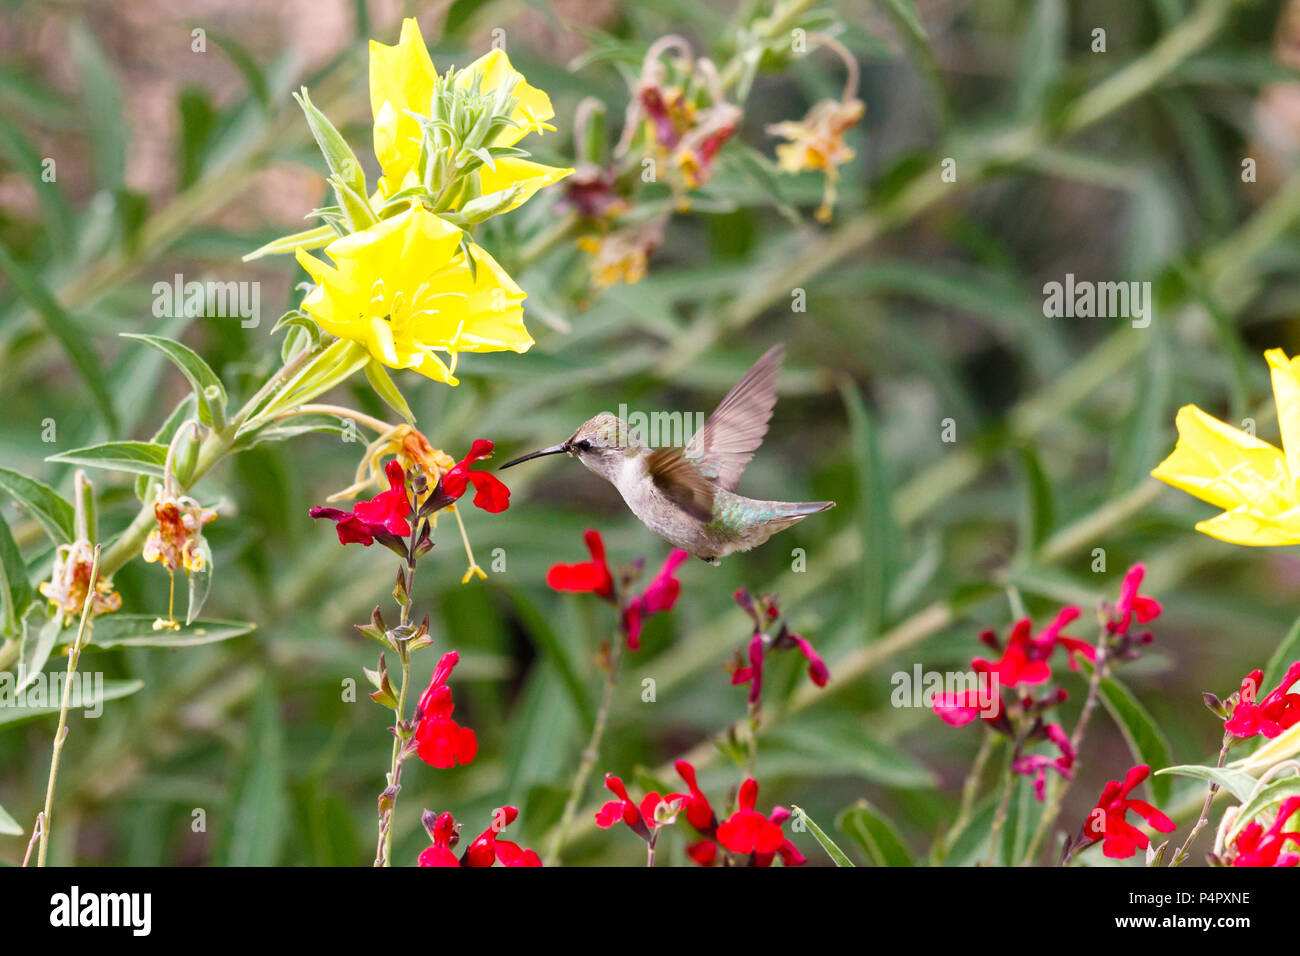 Colibri d'Anna mi vol stationnaire, se nourrissant de fleurs rouge vif, vert et jaune des plantes en fleurs à l'arrière-plan. Le désert de Sonora en Arizona. Banque D'Images